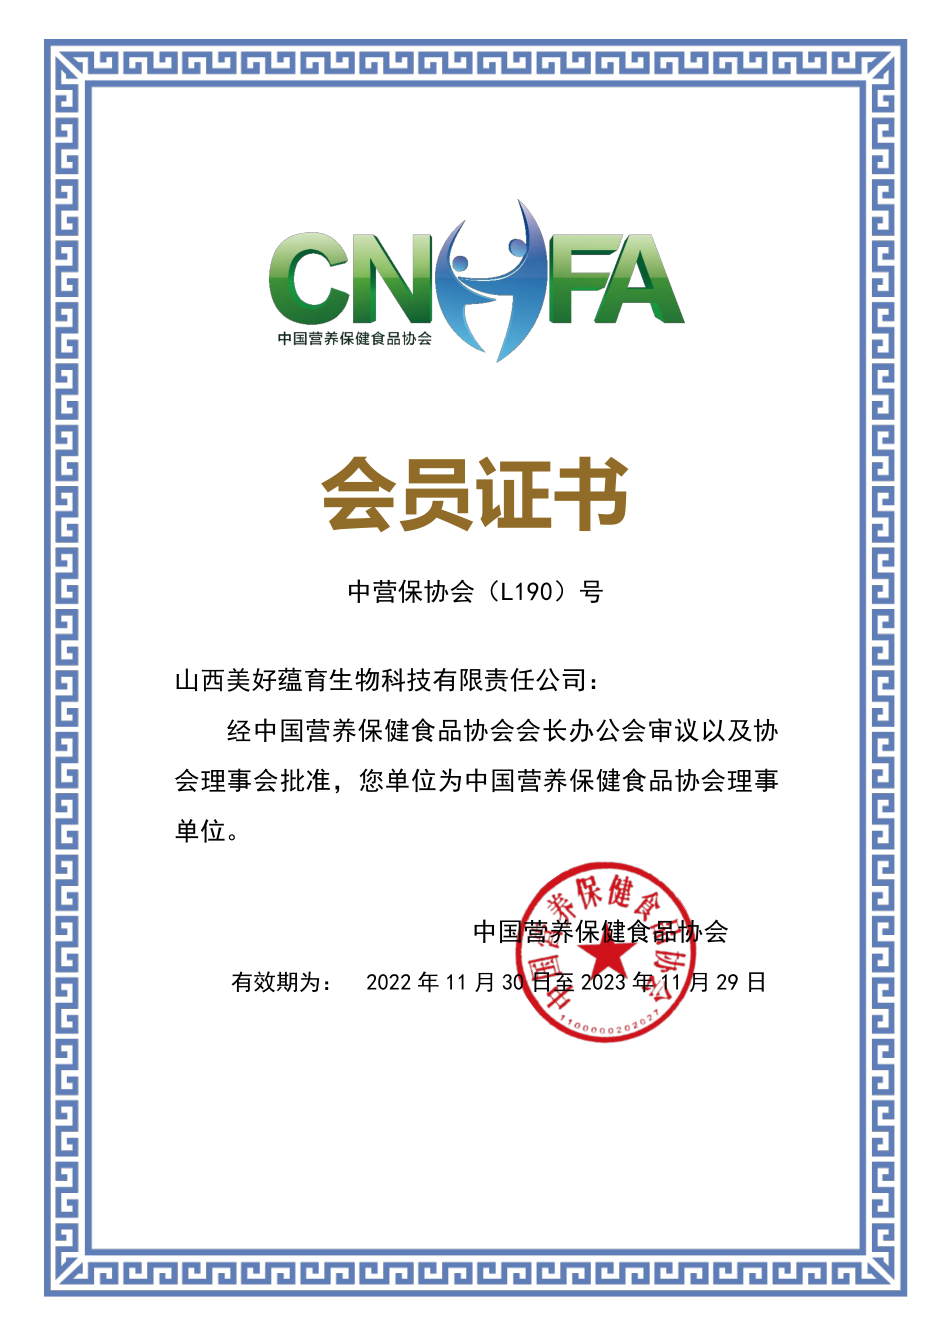 美好蕴育正式成为《中国营养保健食品协会》理事会员单位